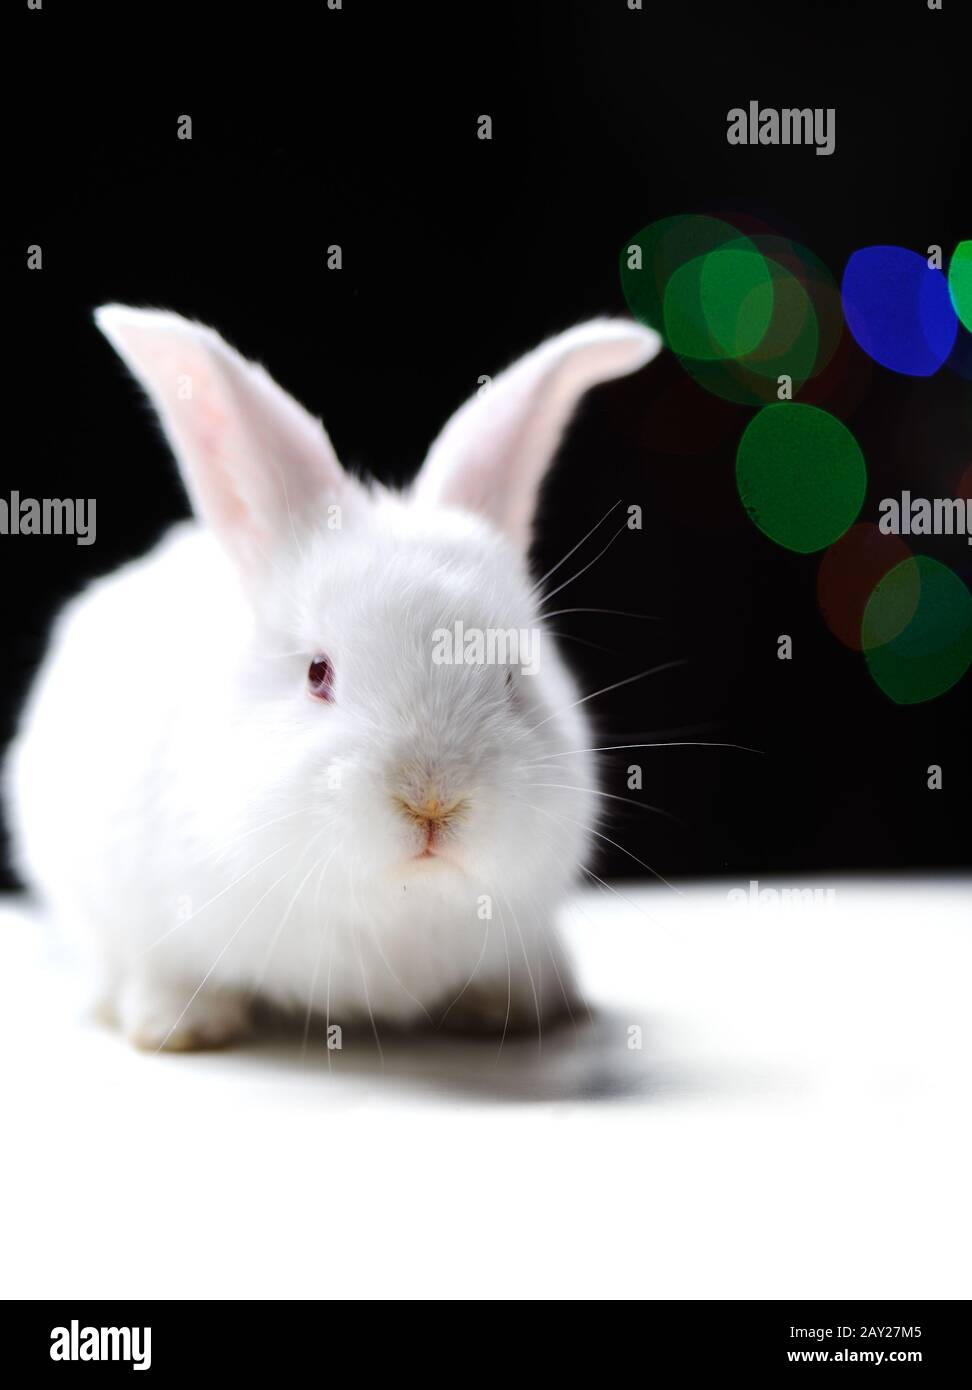 White beautiful rabbit Stock Photo